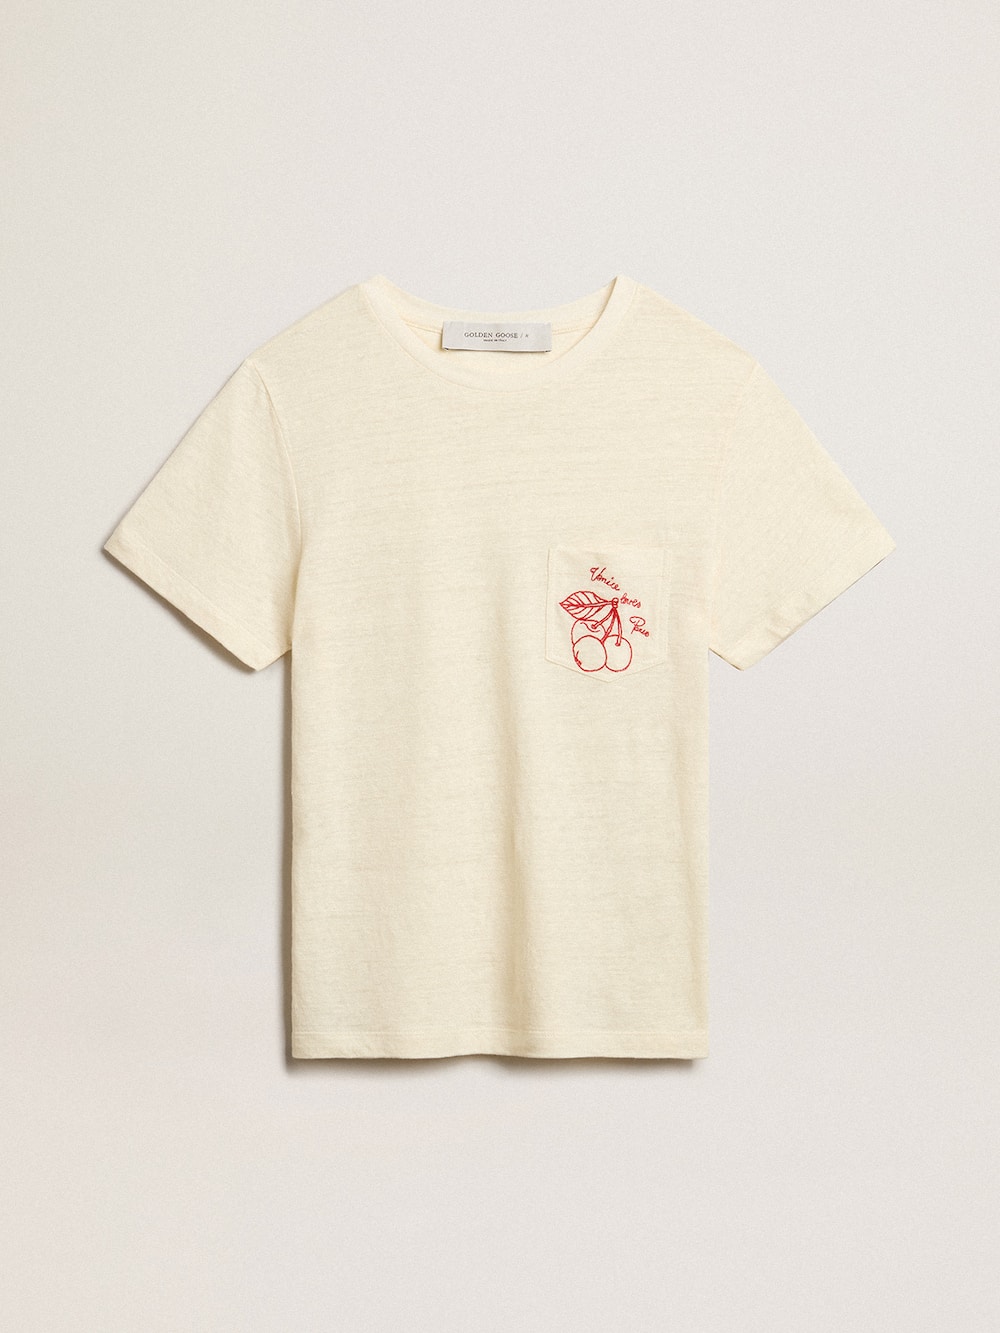 Golden Goose - Camiseta de mujer en algodón color blanco envejecido y con bolsillo bordado in 